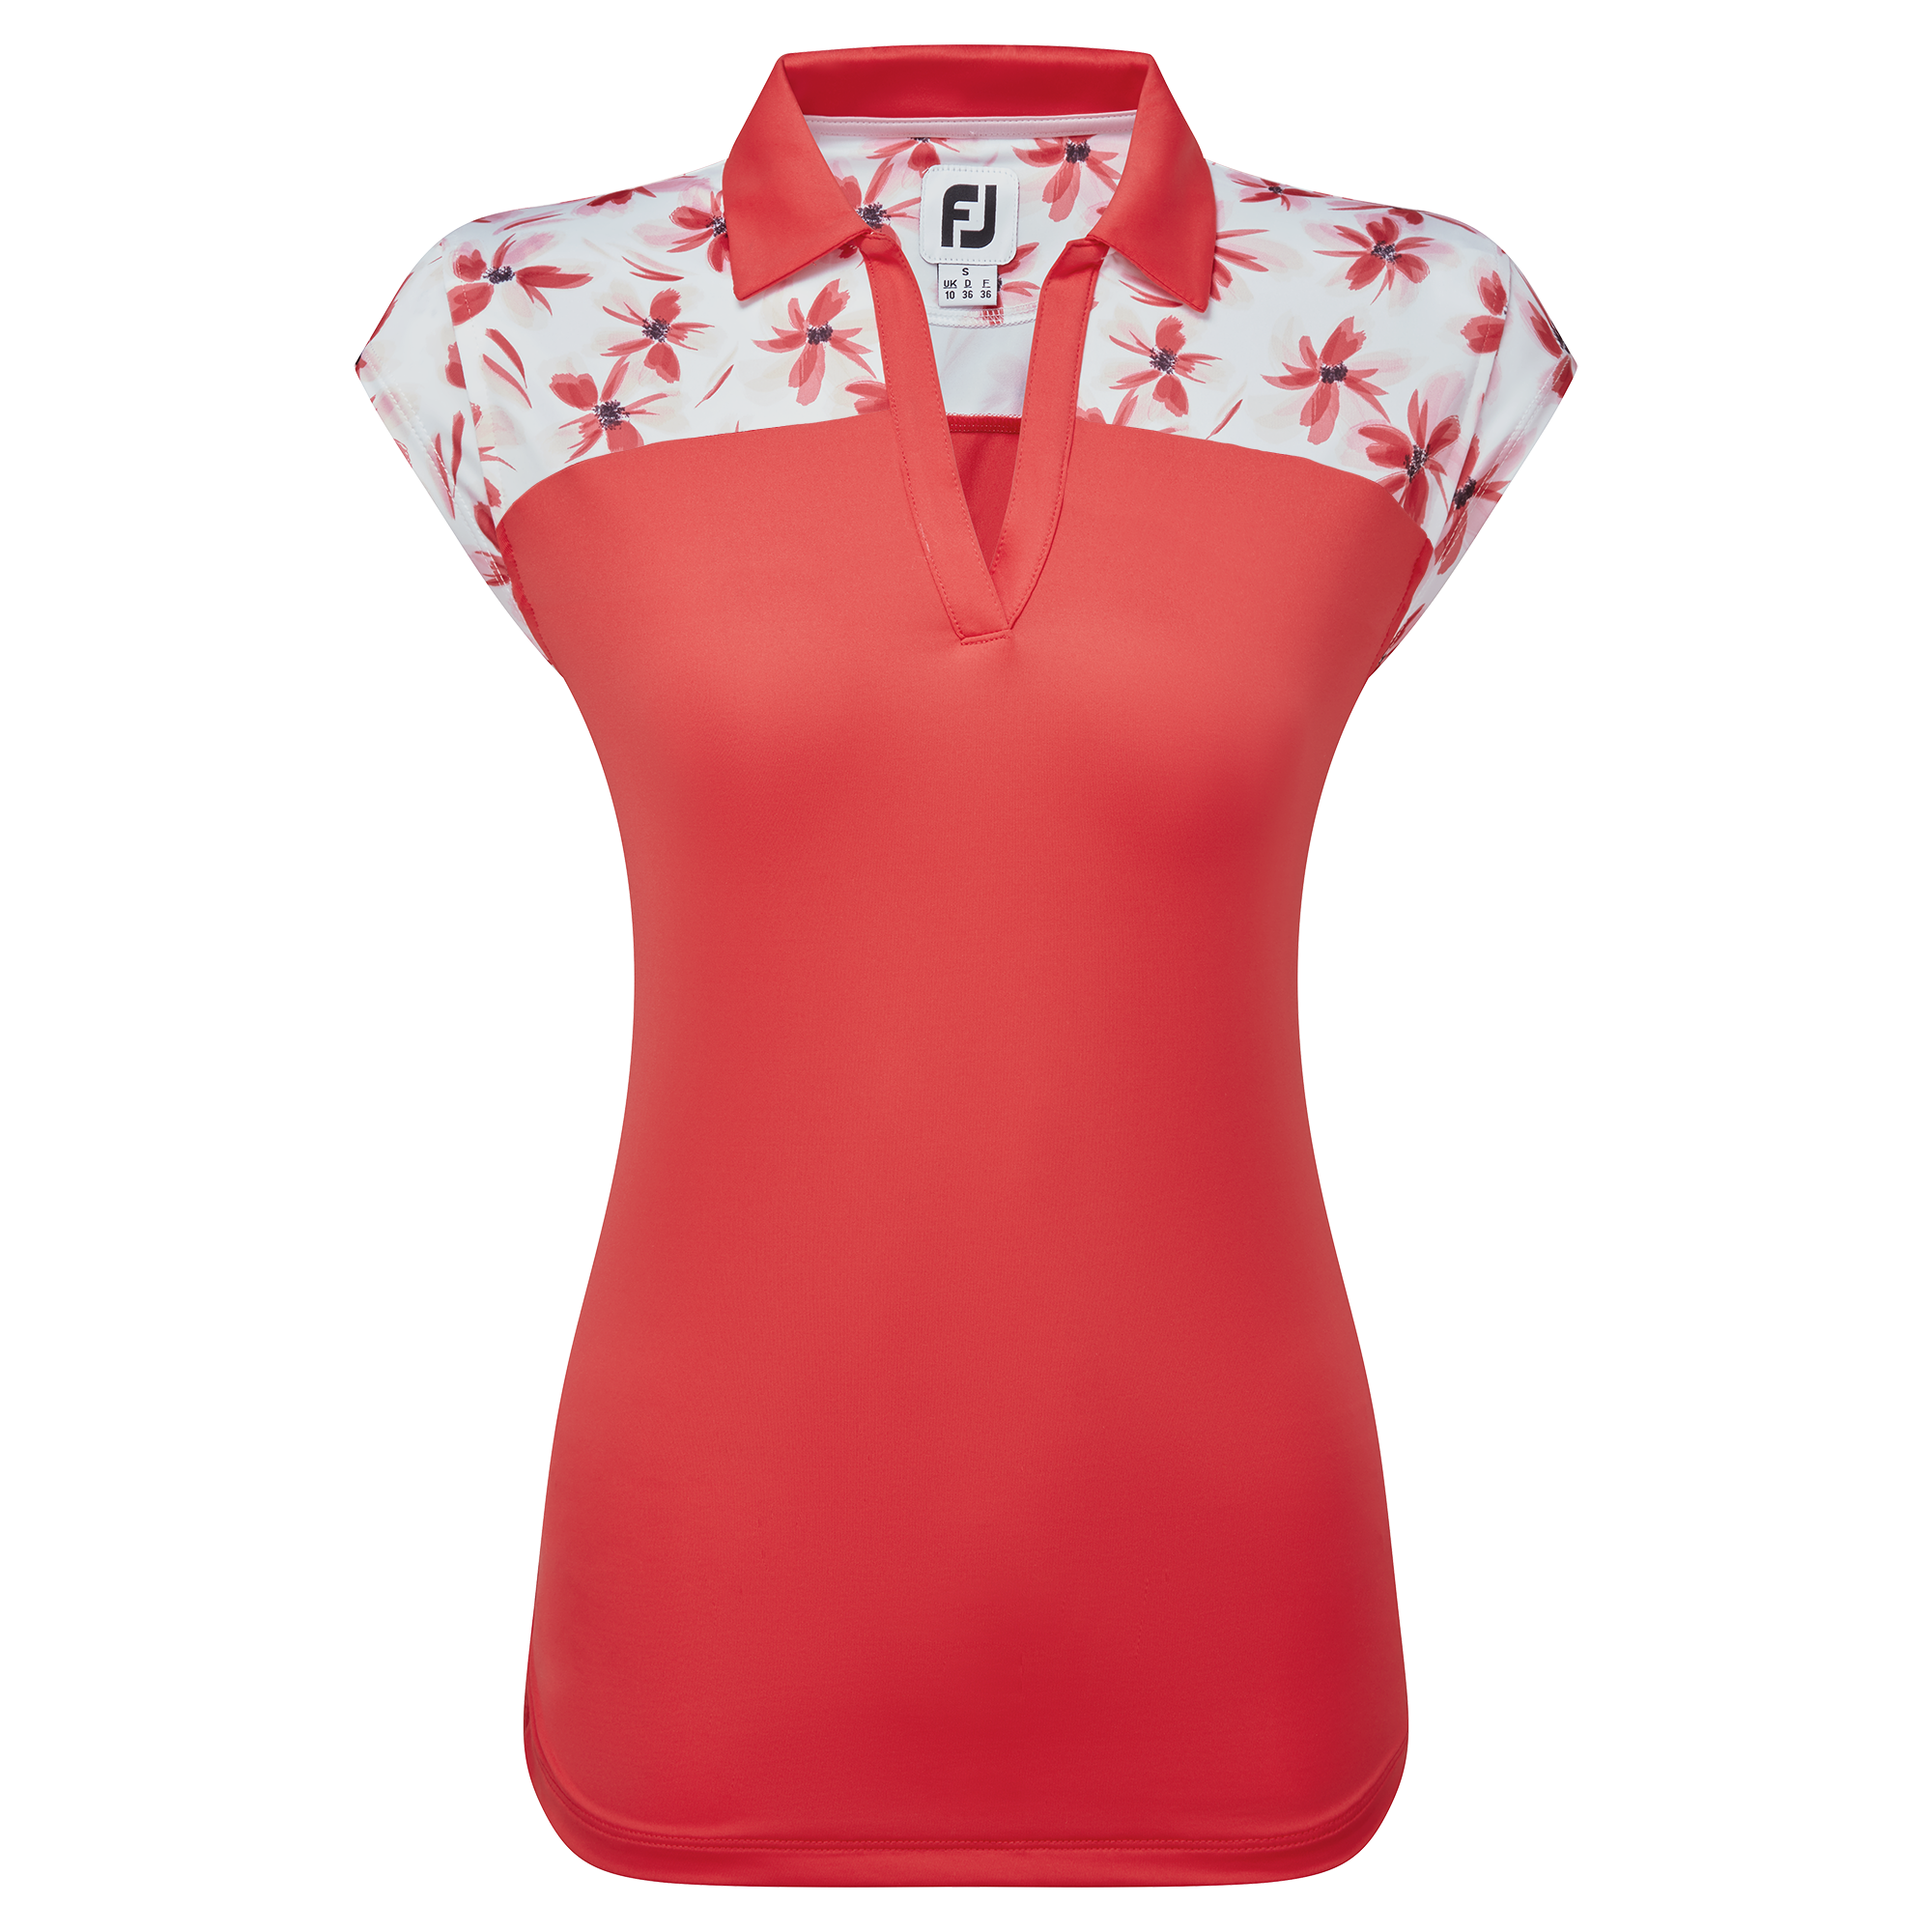 FootJoy Blocked Floral Print Lisle dámské golfové triko, červené, vel. M